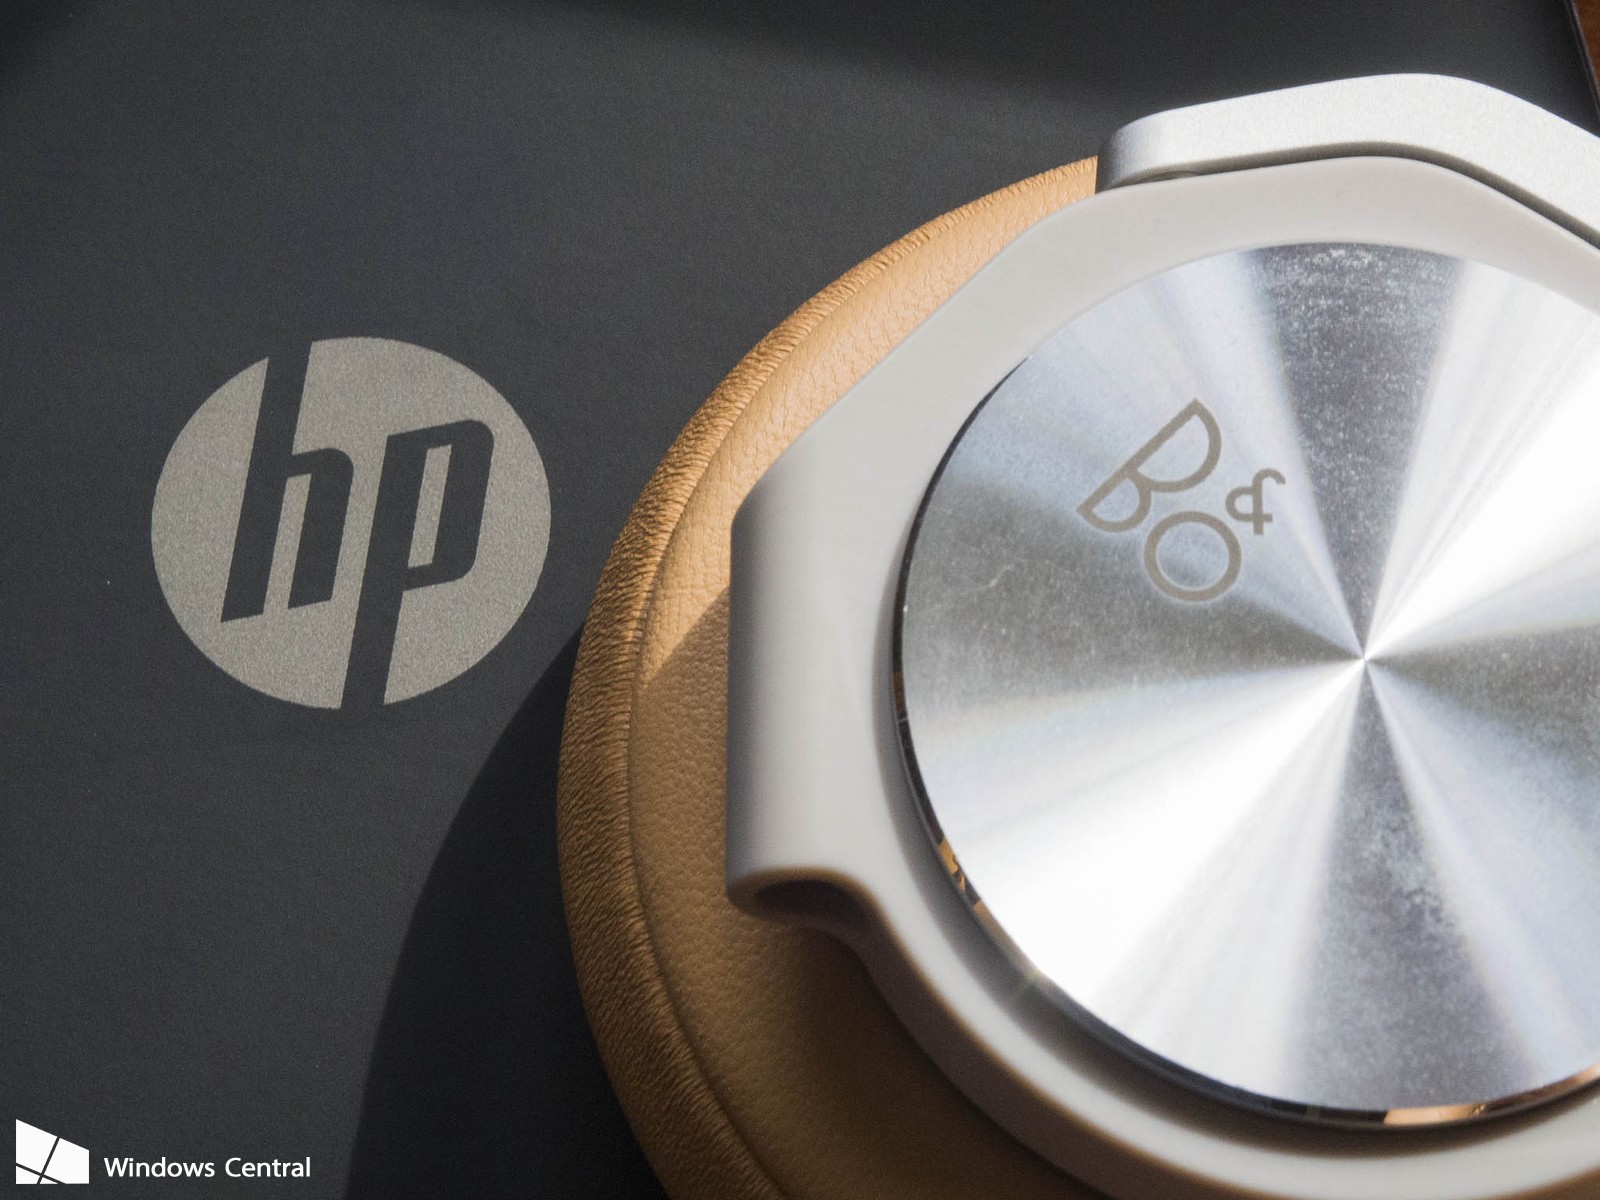 Bang & Olufsen reemplazará a Beats como el sistema de audio presente en computadoras y tabletas de HP. Fotografía: Windows Central